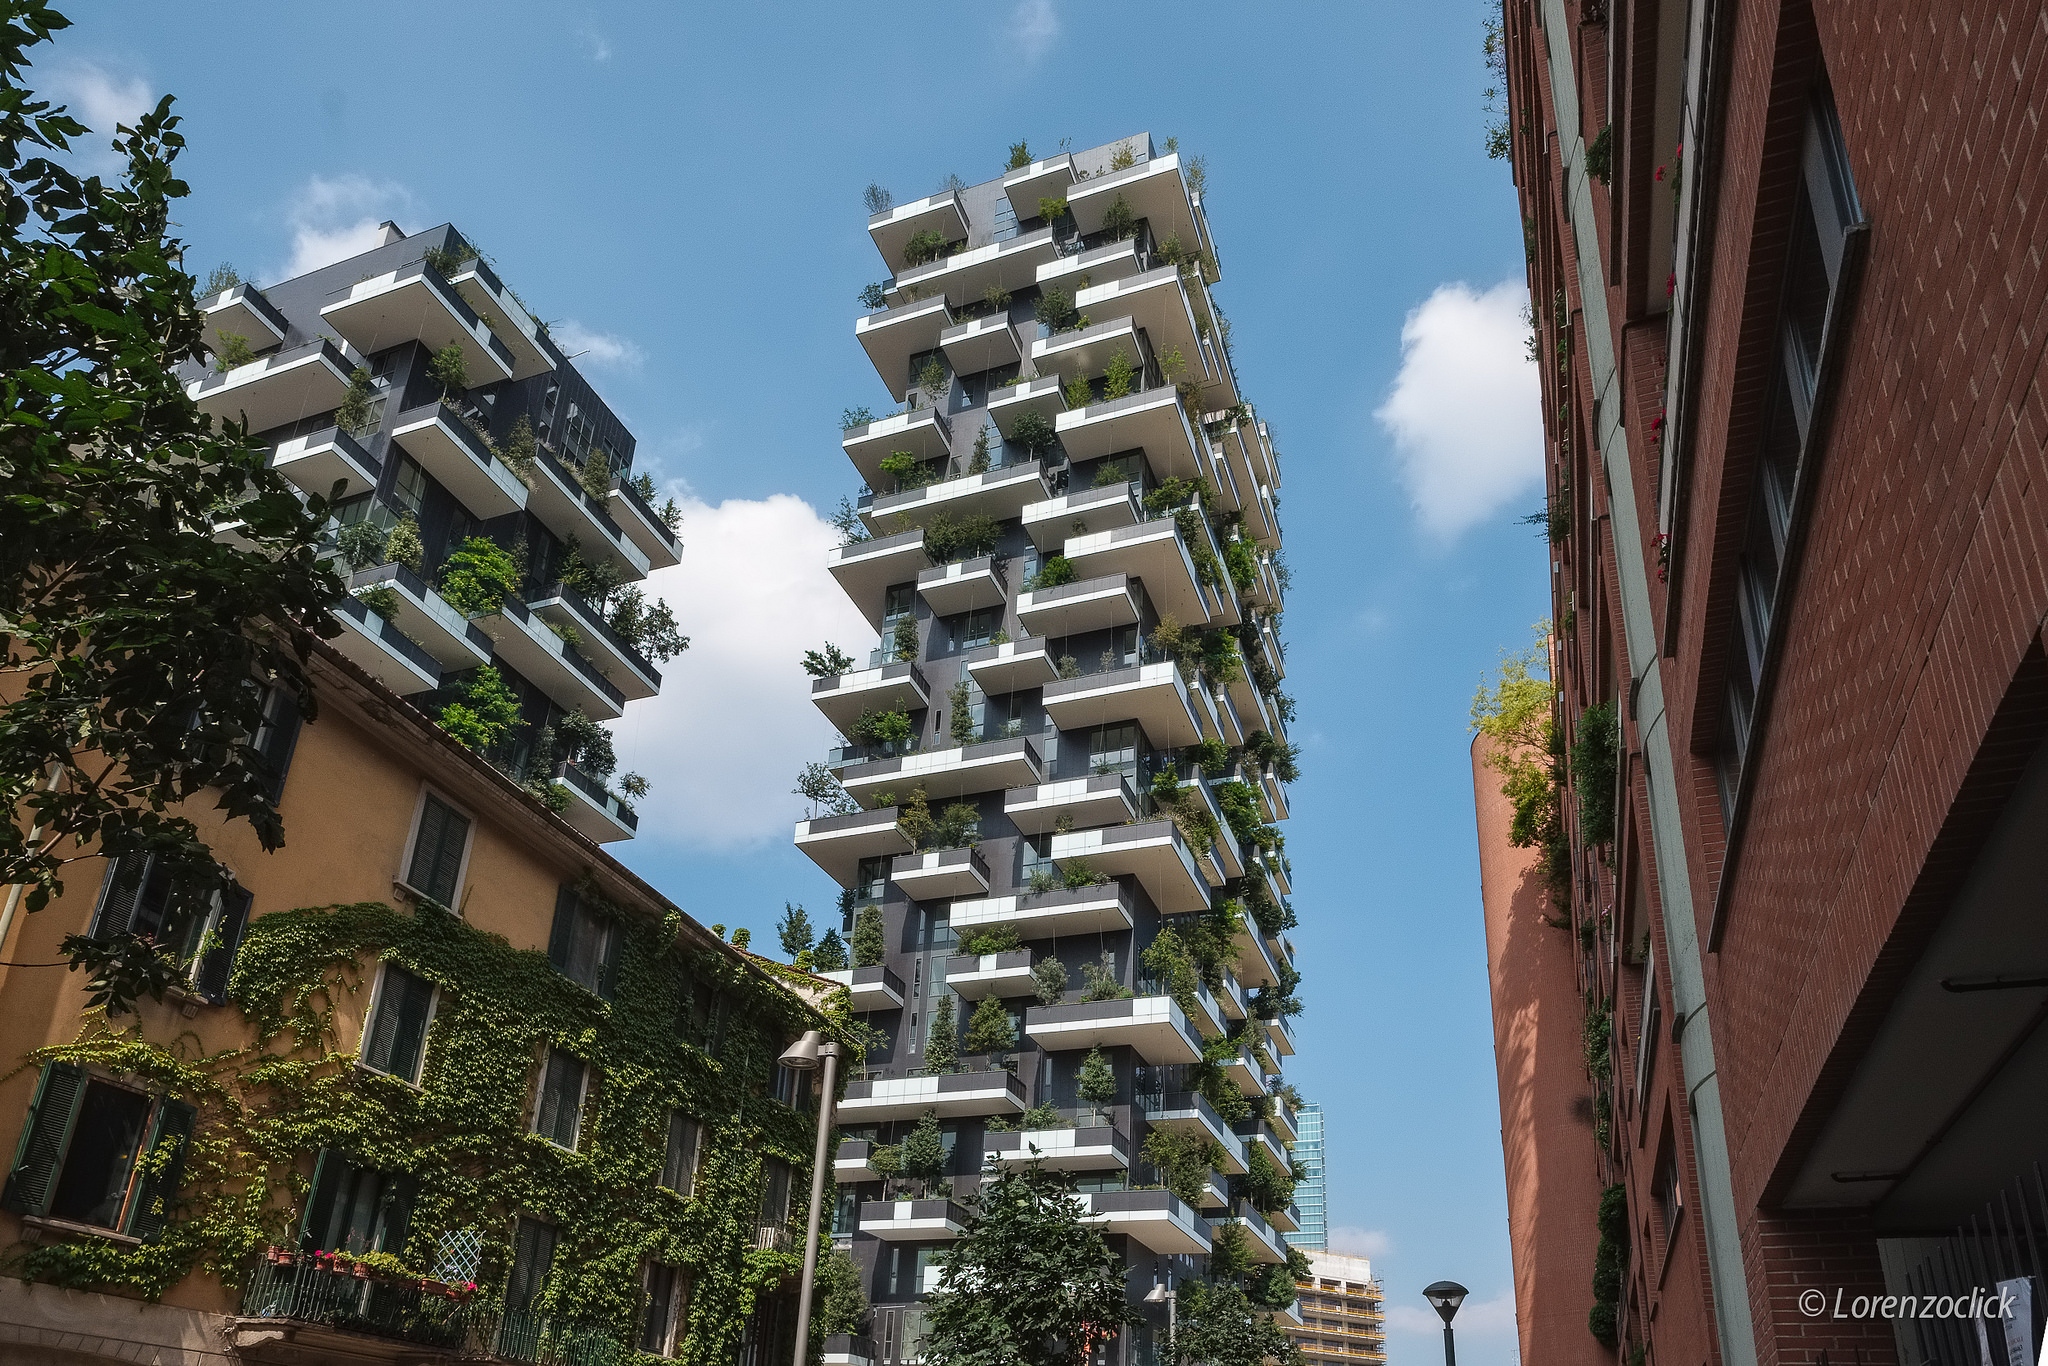 Urbanes Ernährungssystem - die Wohnhäuser "Bosco Verticale" in Mailand